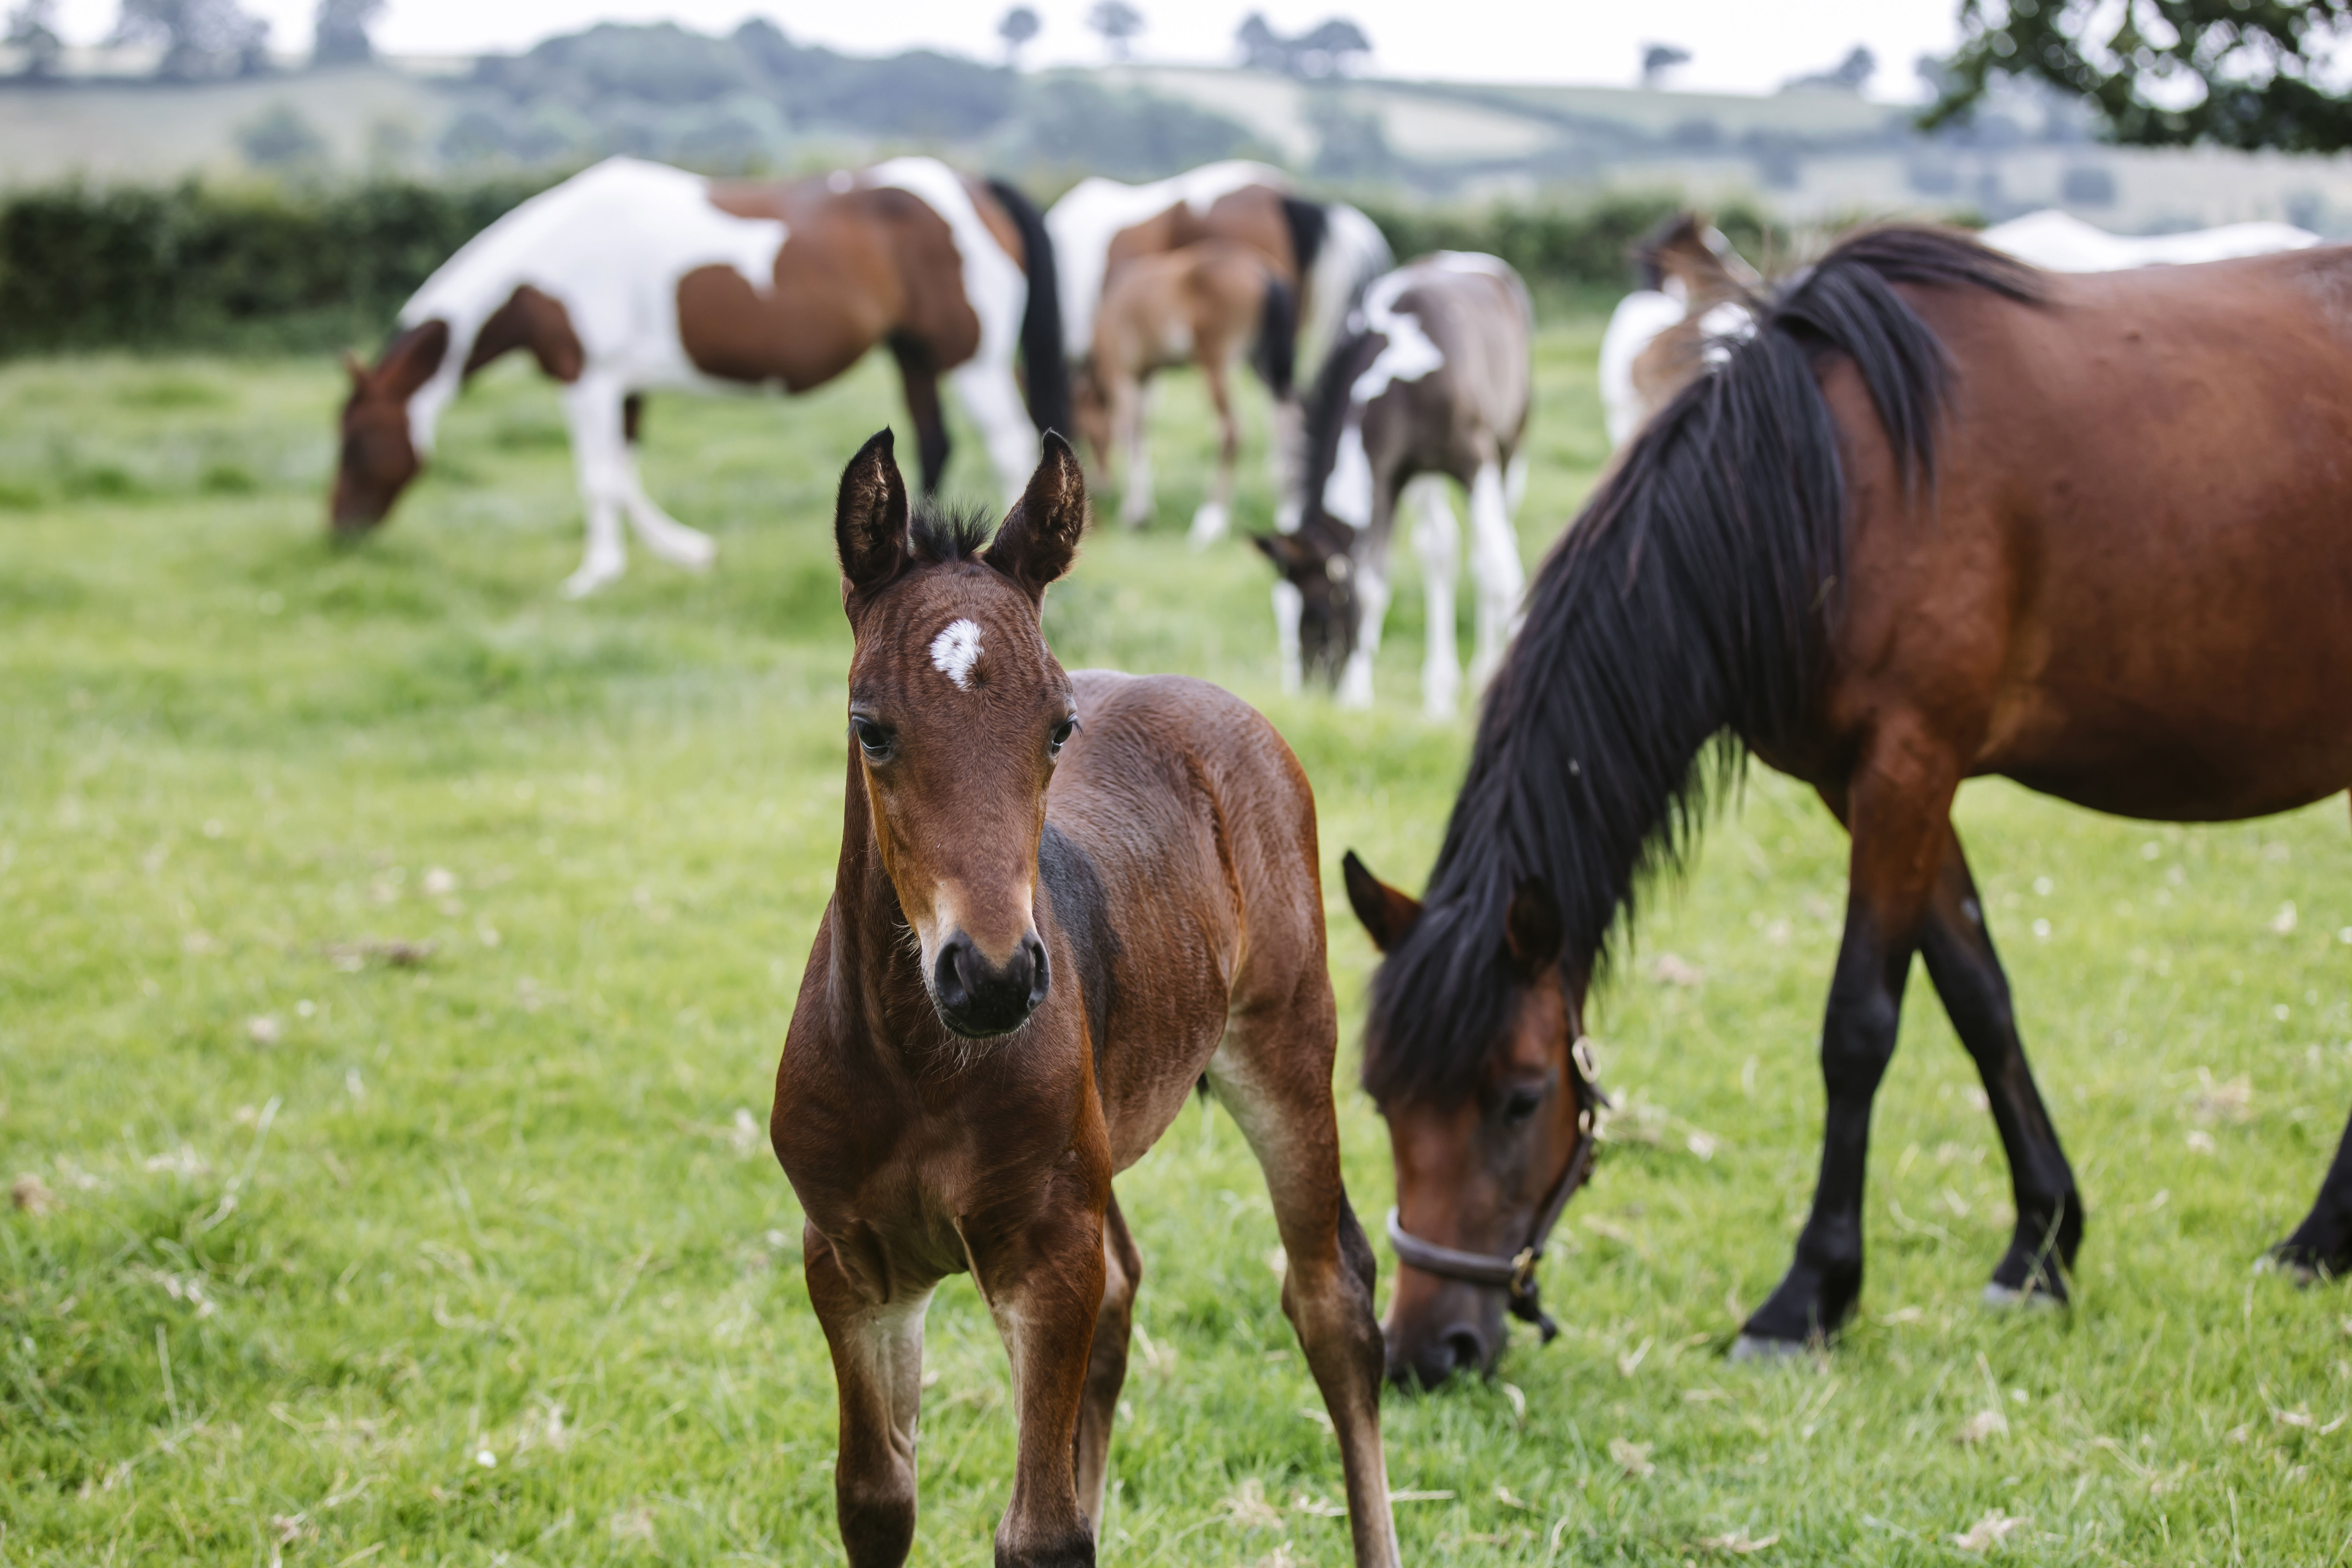 Foals in a field